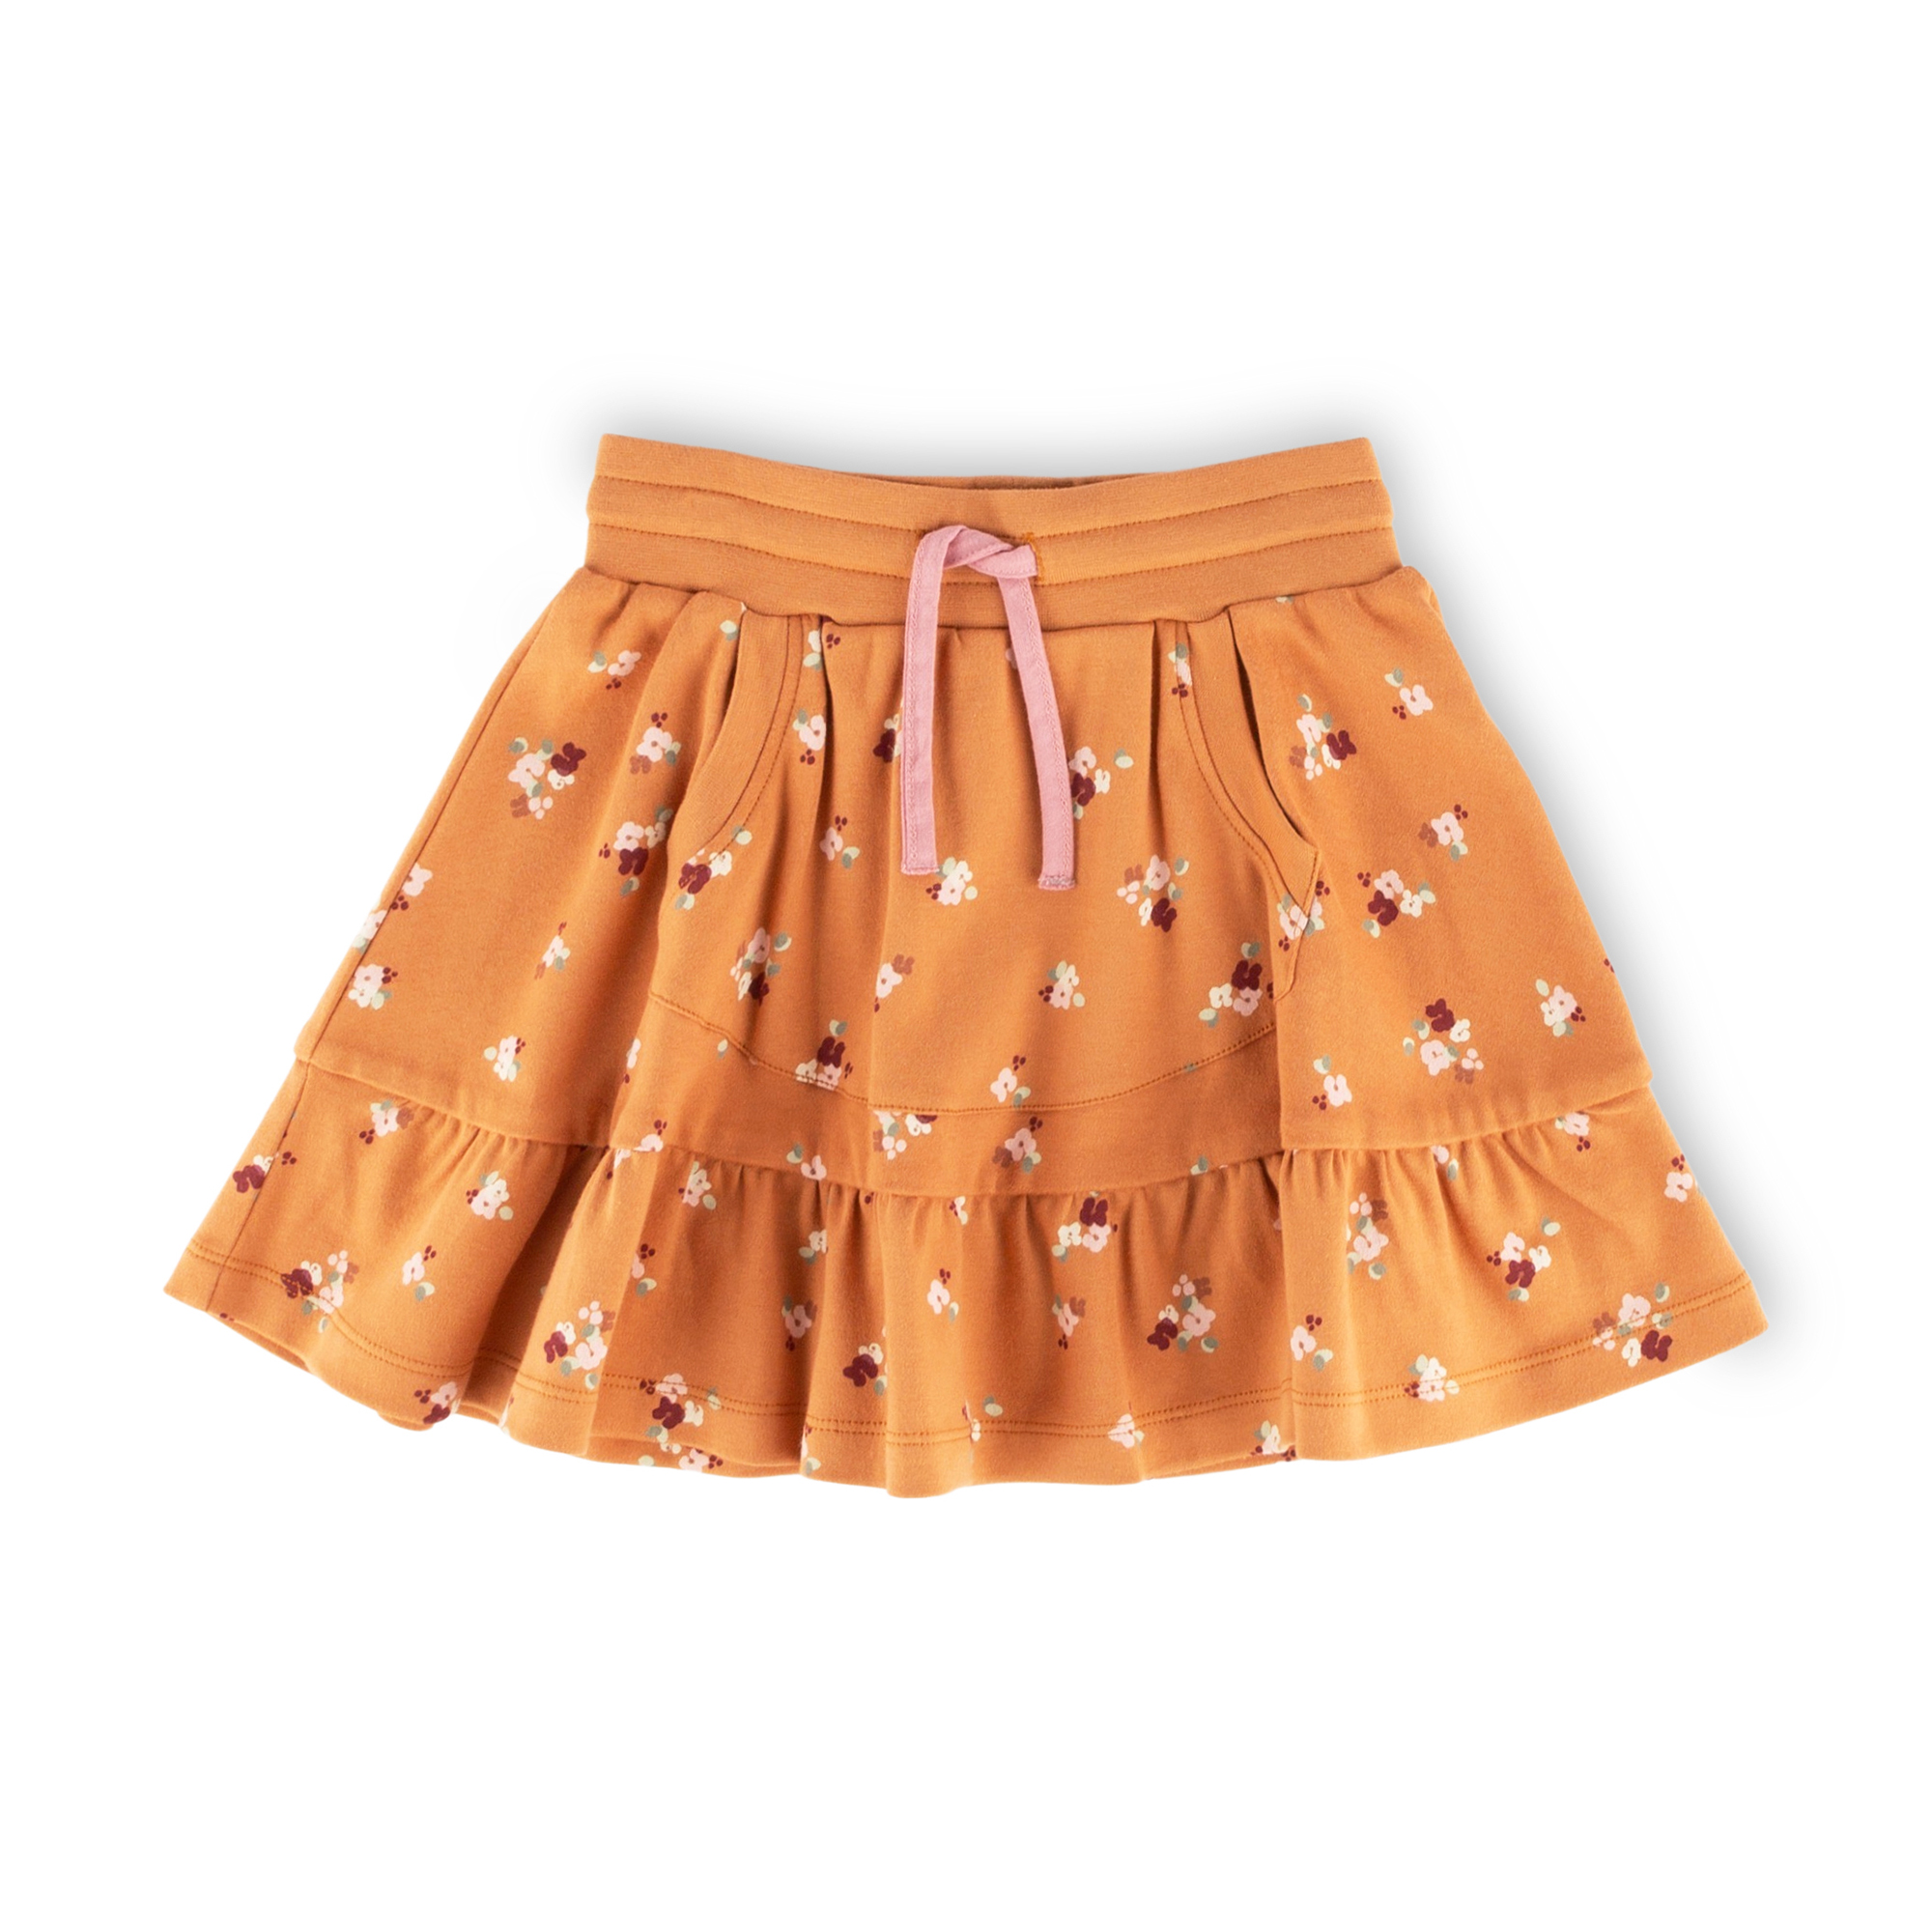 Flounce skirt with kangaroo pocket